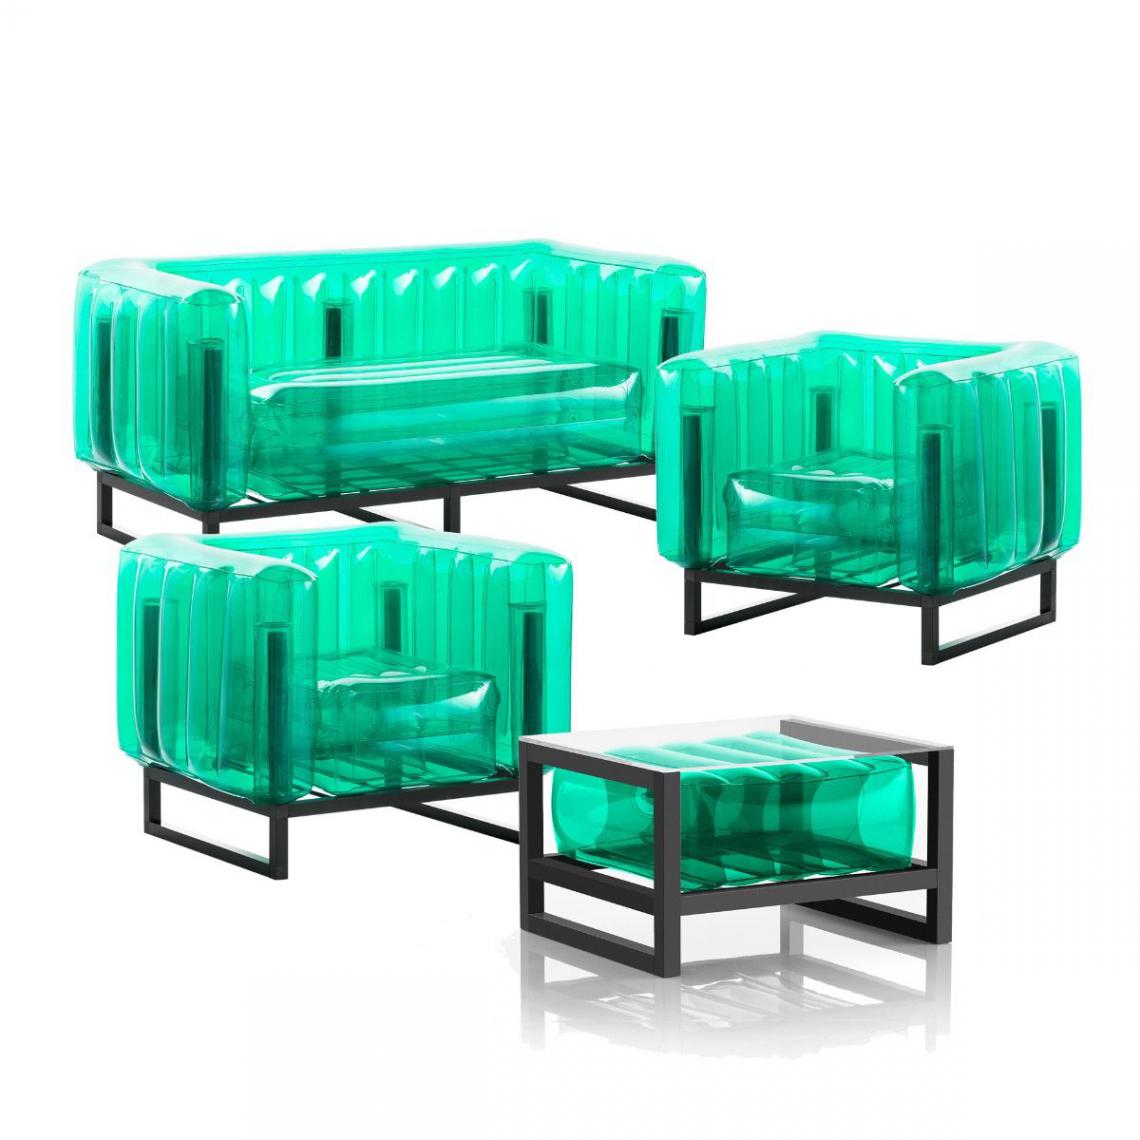 Mojow Design - Salon de jardin Yomi Eko avec table basse - Ensembles canapés et fauteuils